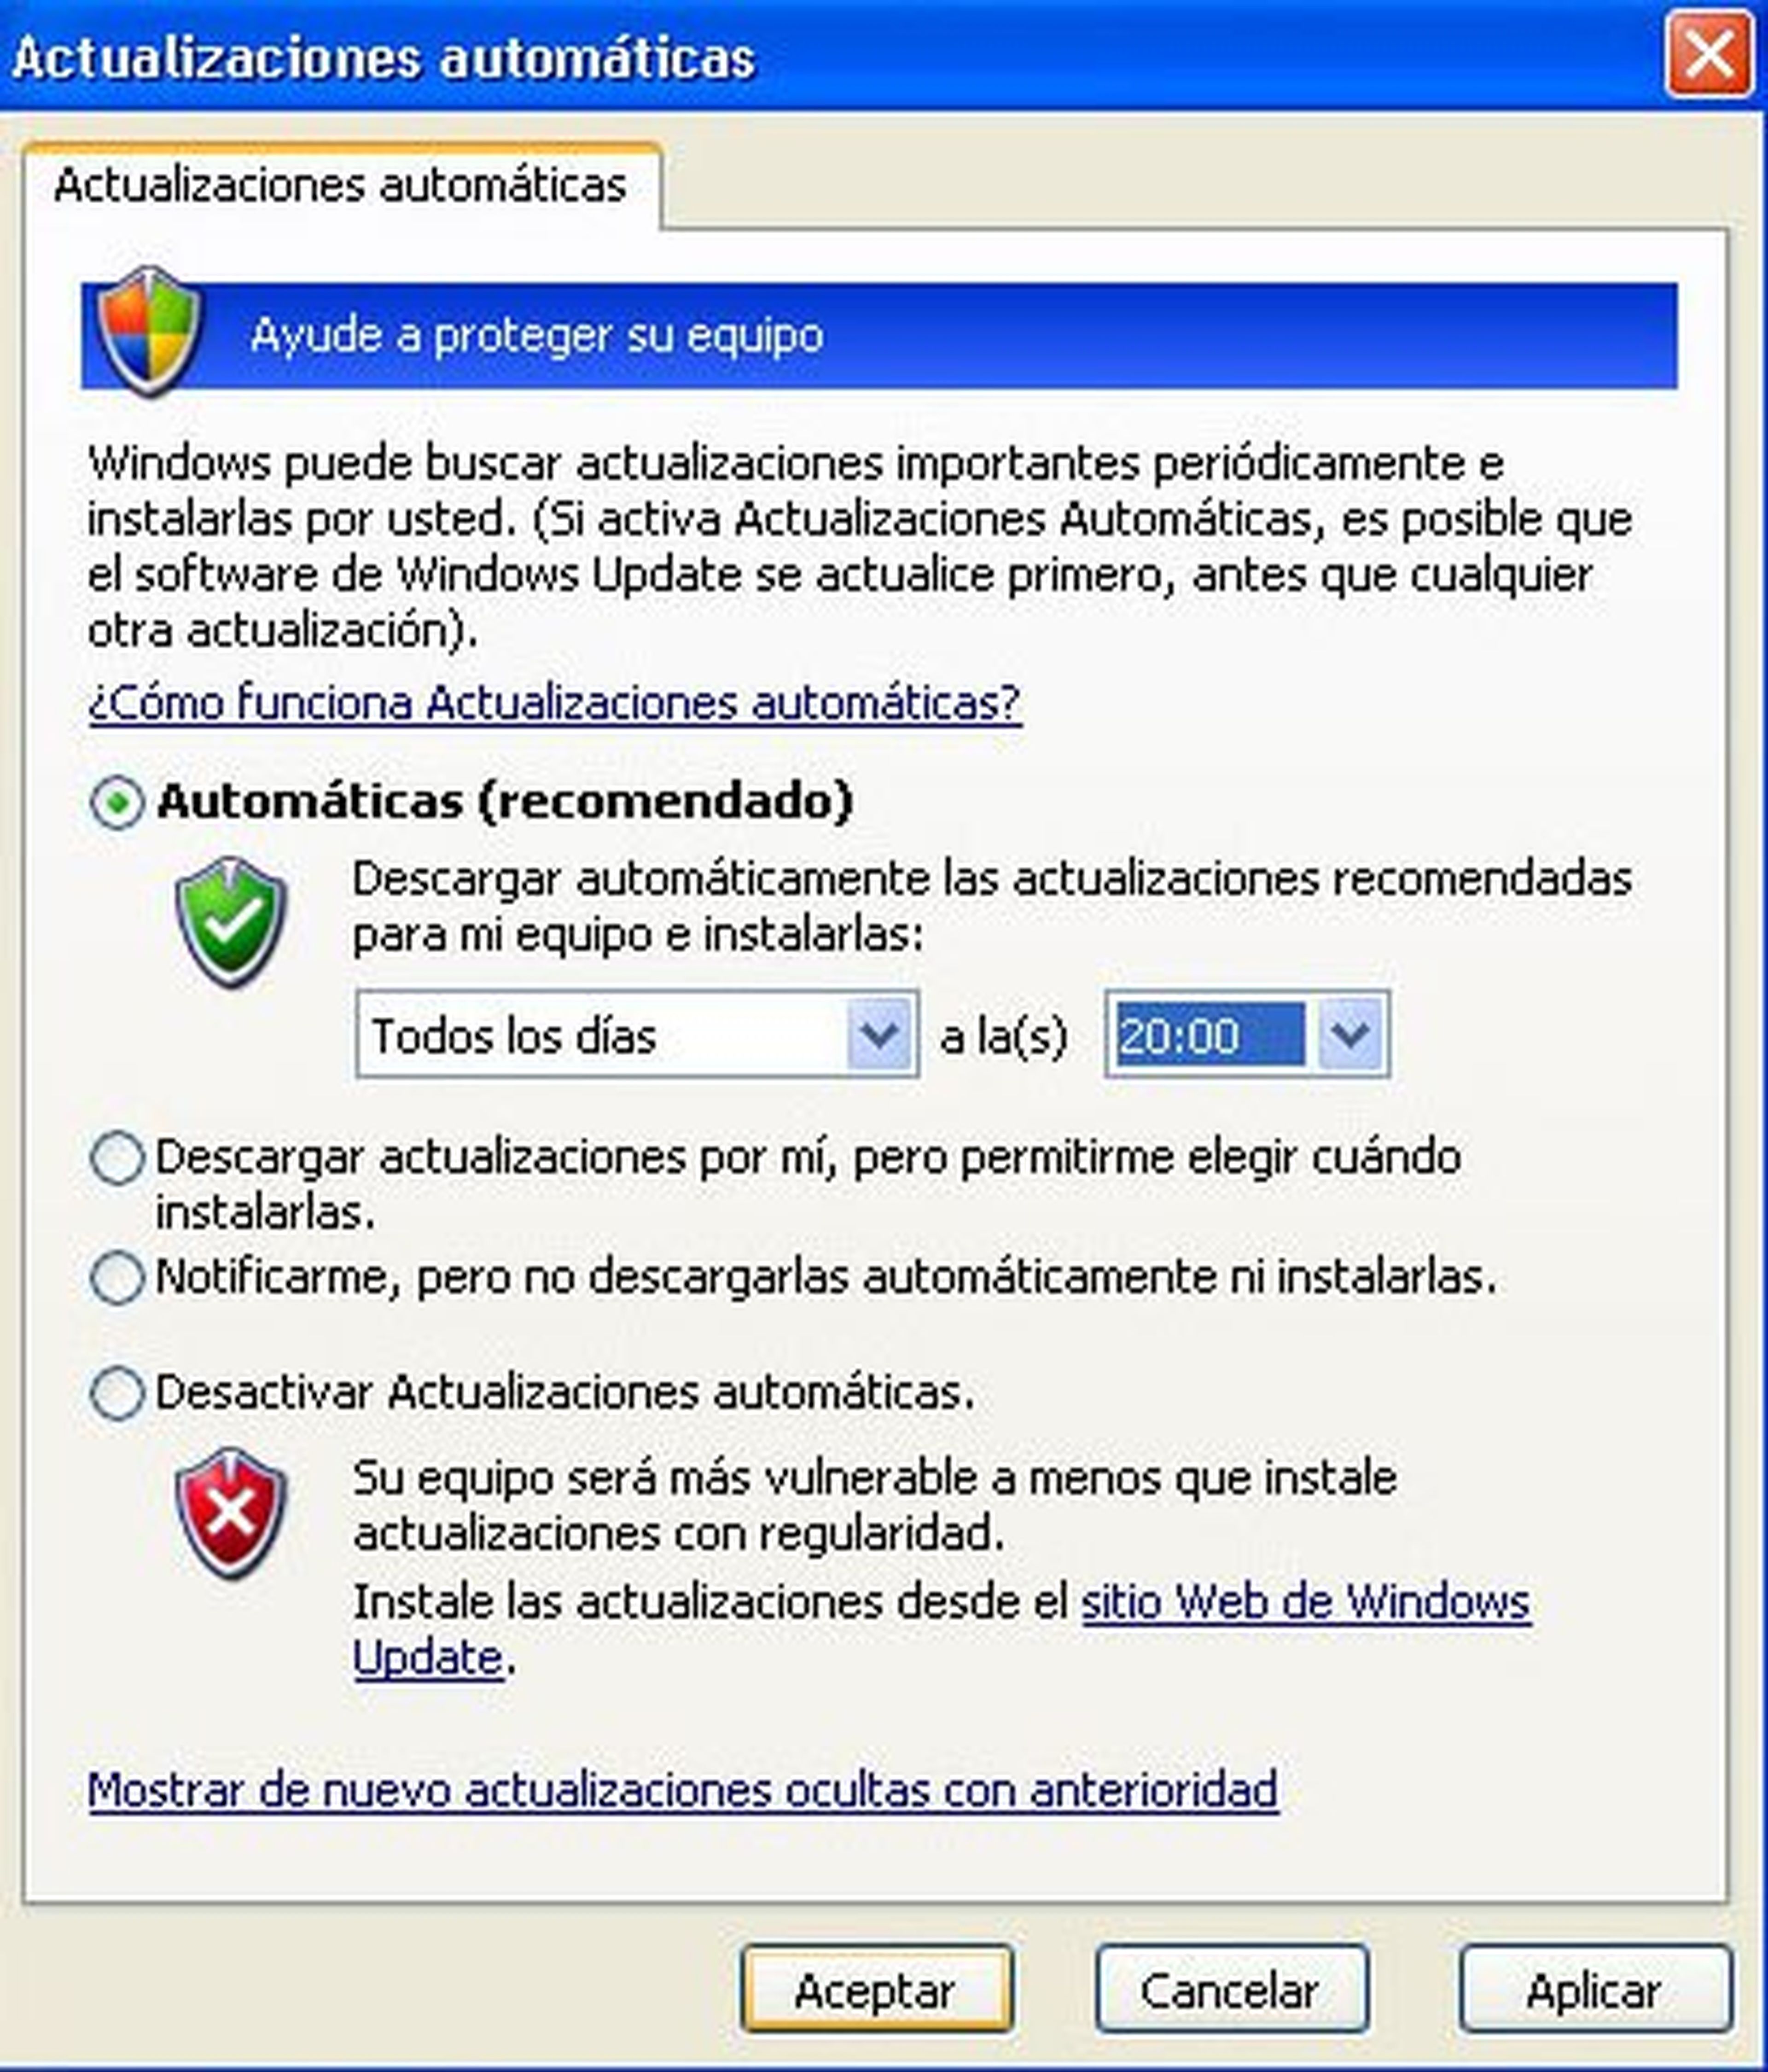 Actualizaciones automáticas en Windows XP